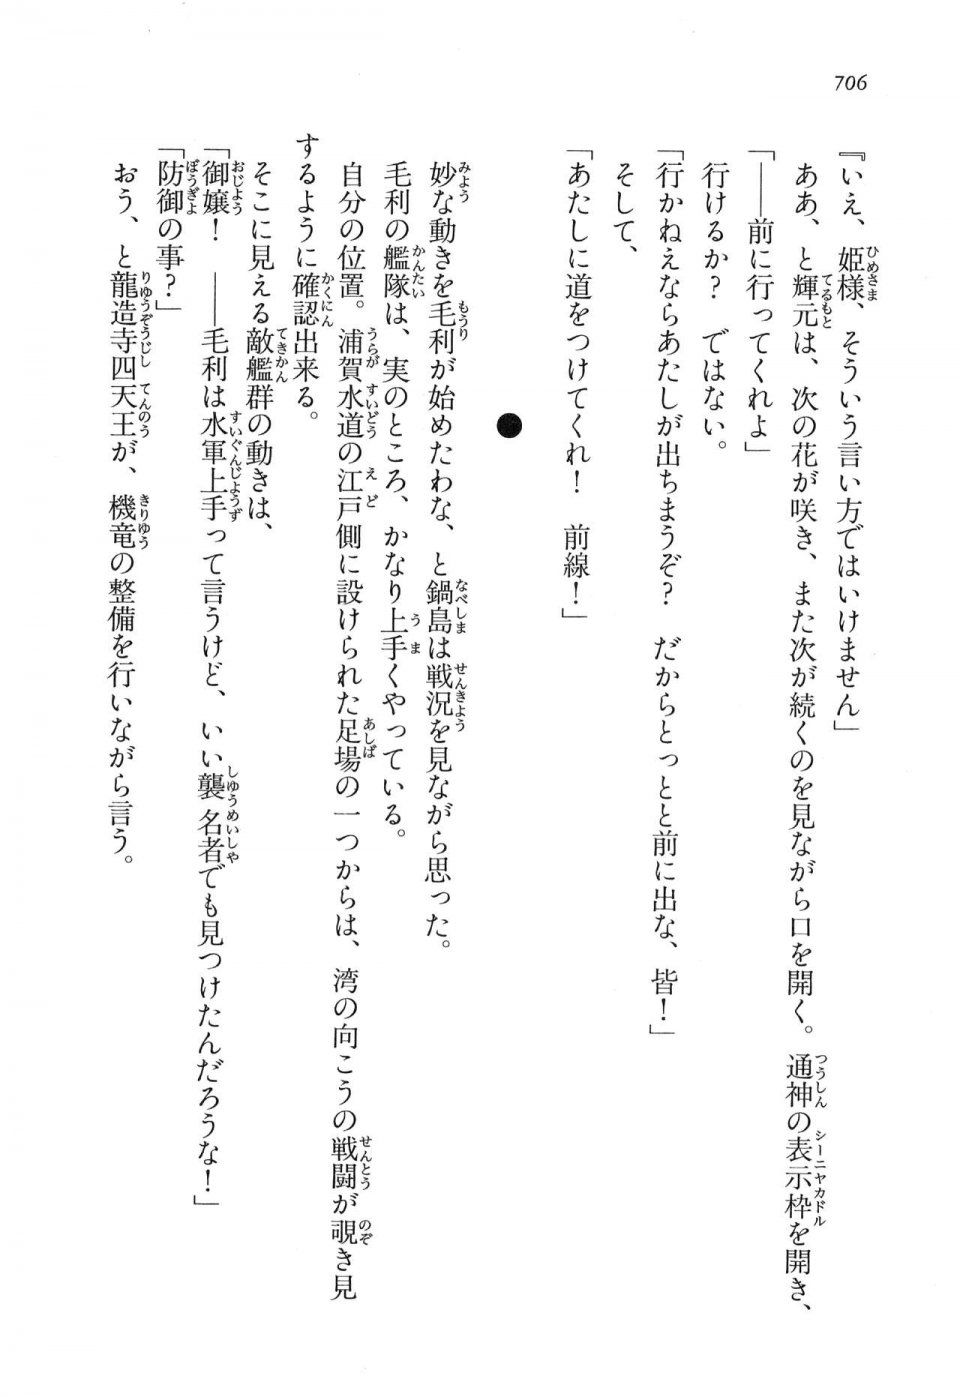 Kyoukai Senjou no Horizon LN Vol 16(7A) - Photo #706